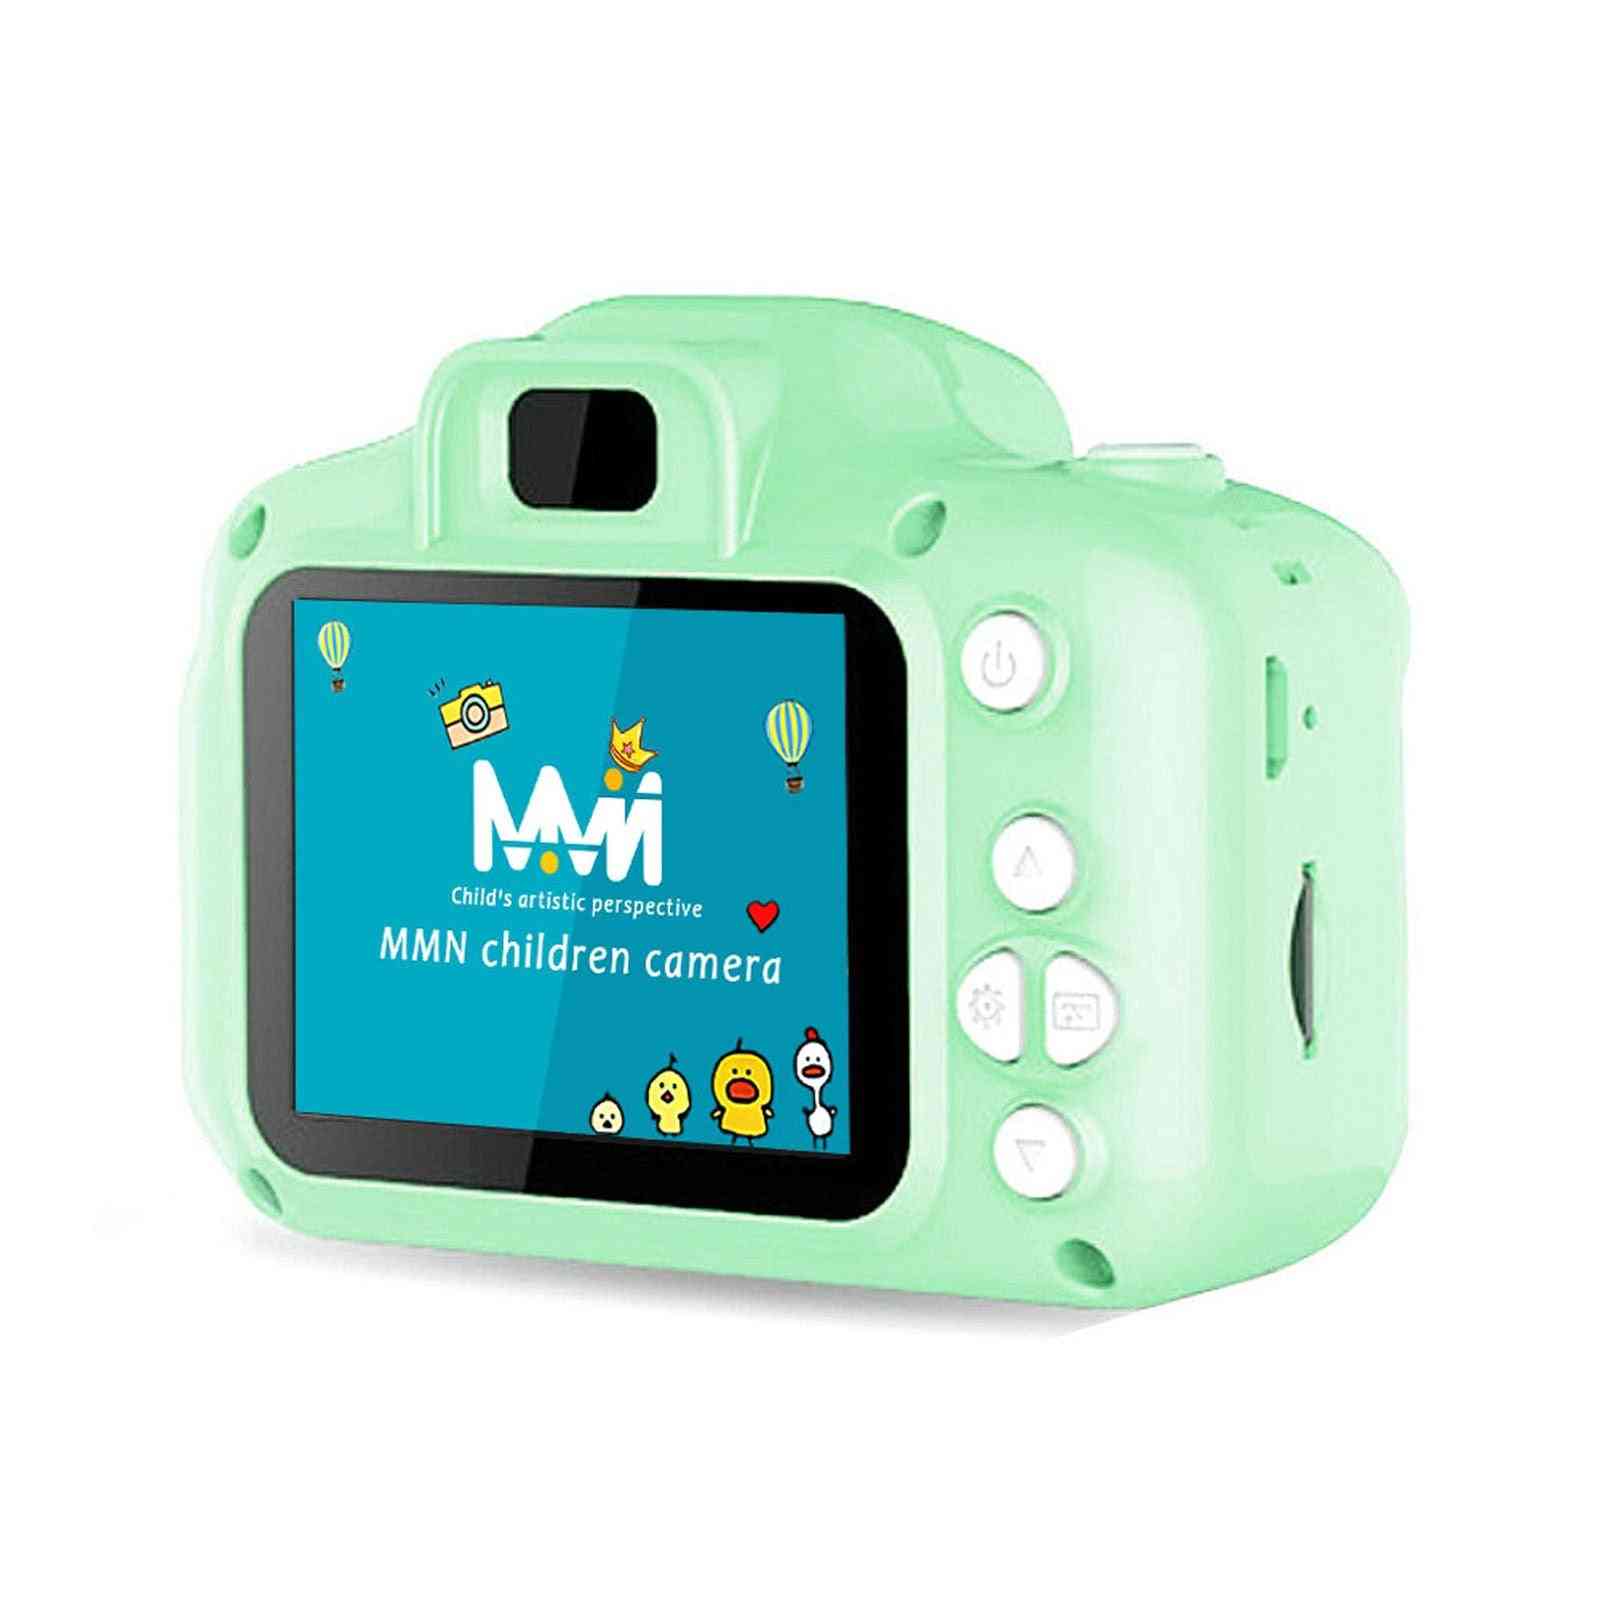 Minis digitalkameror med minneskort